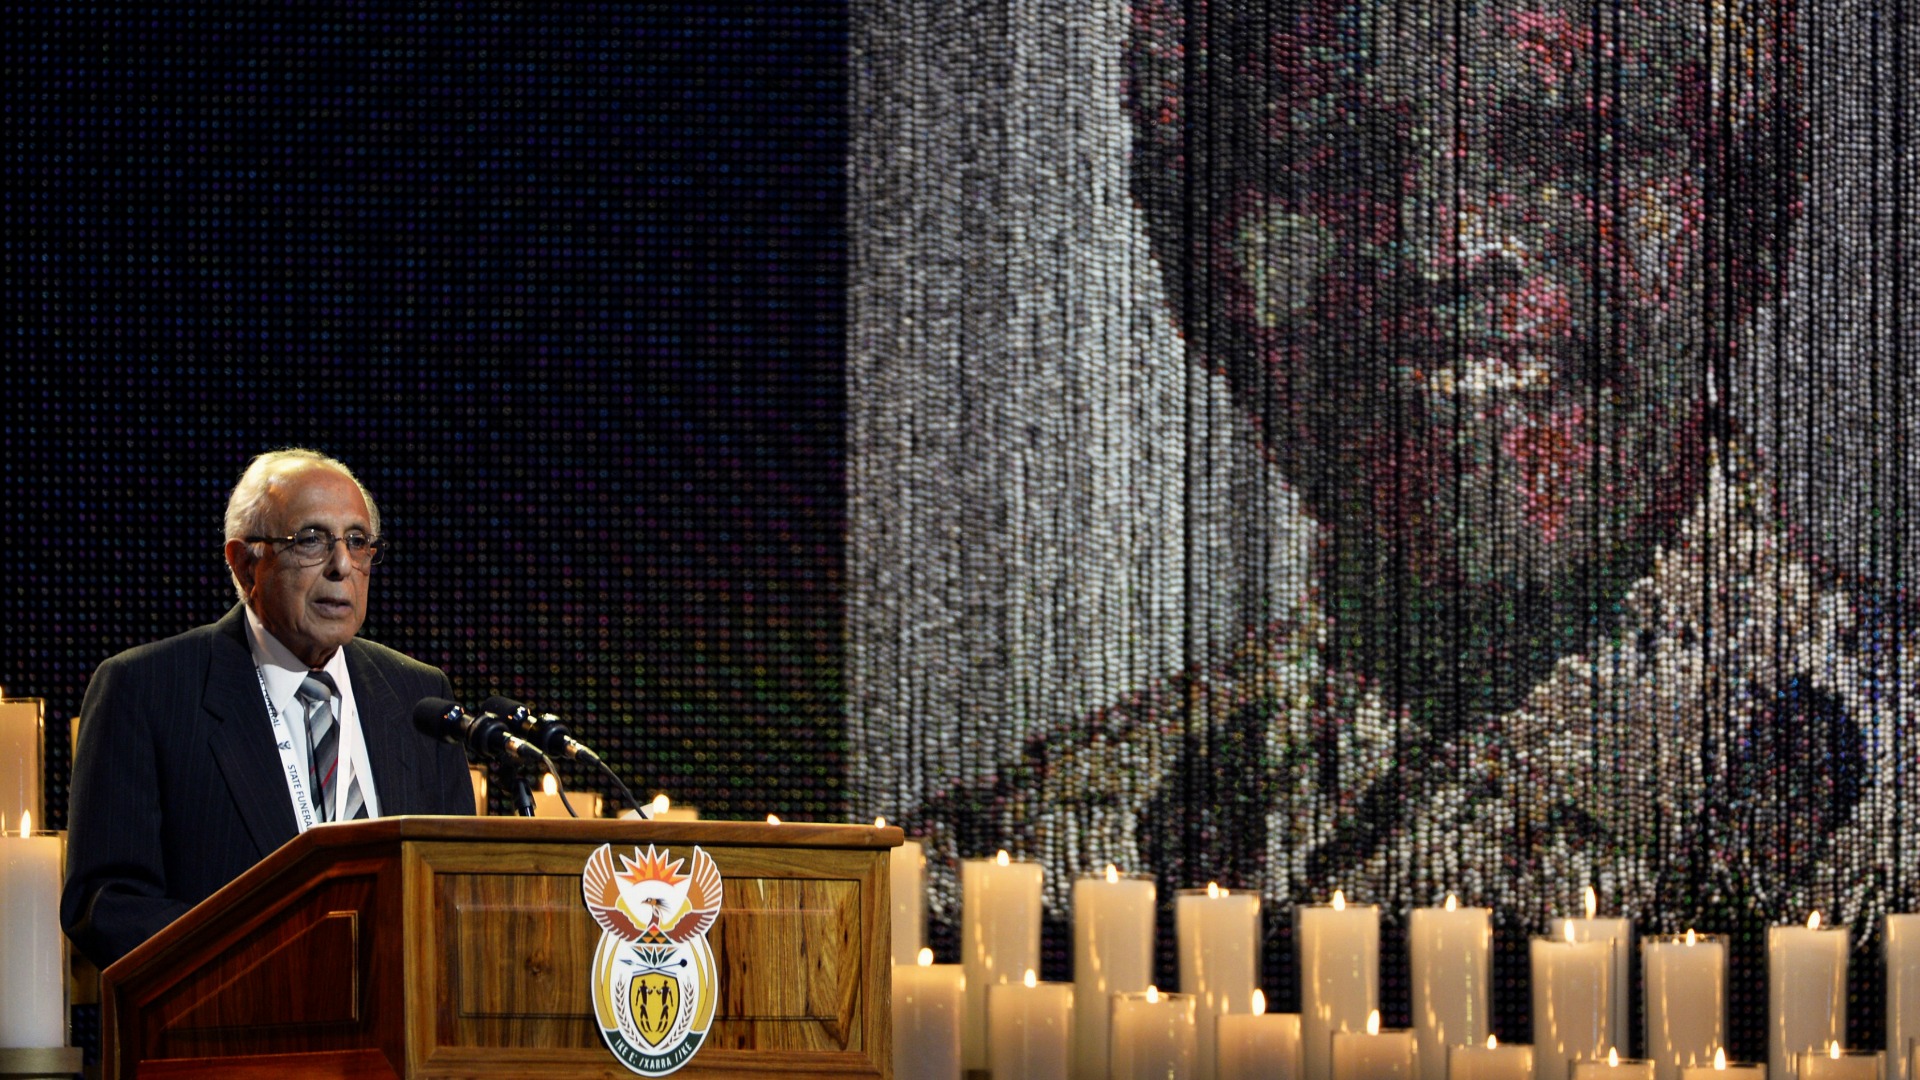 Muere Ahmed Kathrada, símbolo del anti-apartheid en Sudáfrica